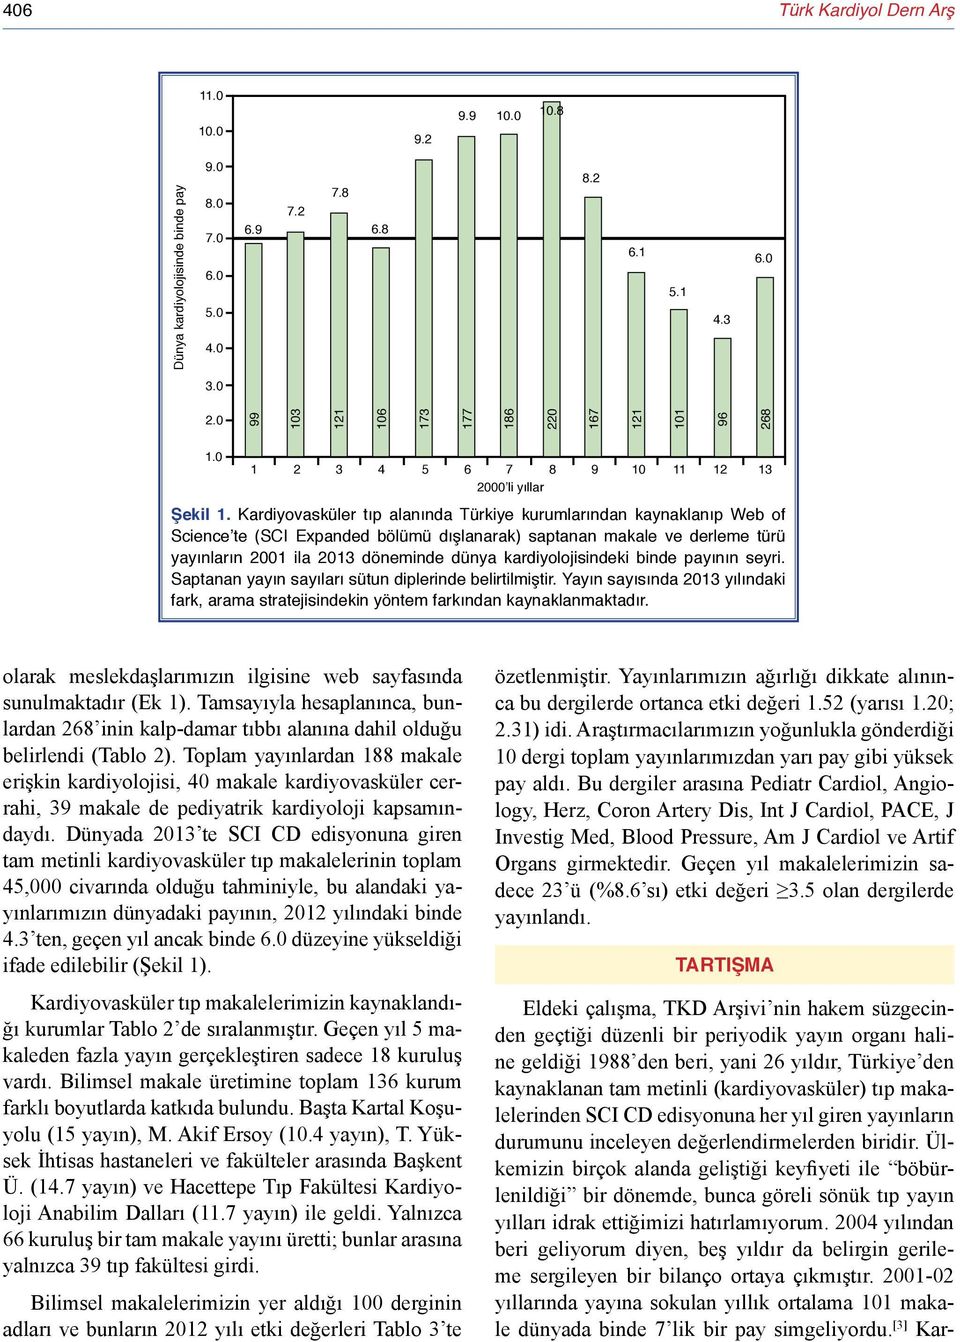 Kardiyovasküler tıp alanında Türkiye kurumlarından kaynaklanıp Web of Science te (SCI Expanded bölümü dışlanarak) saptanan makale ve derleme türü yayınların 2001 ila 2013 döneminde dünya